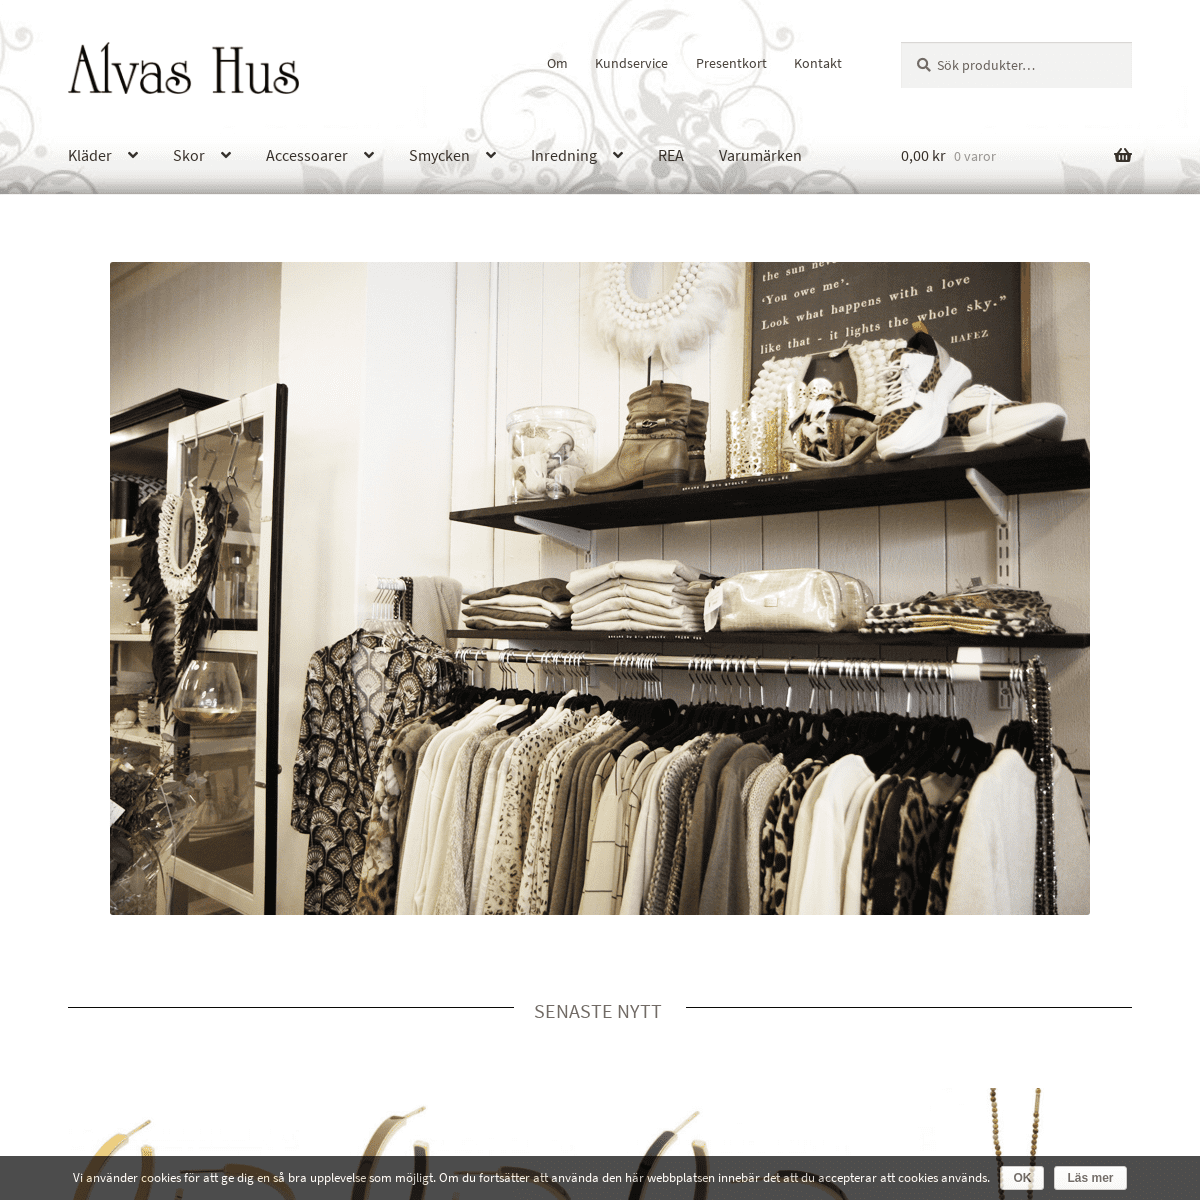 Alvas Hus - Kläder, smycken och inredning online